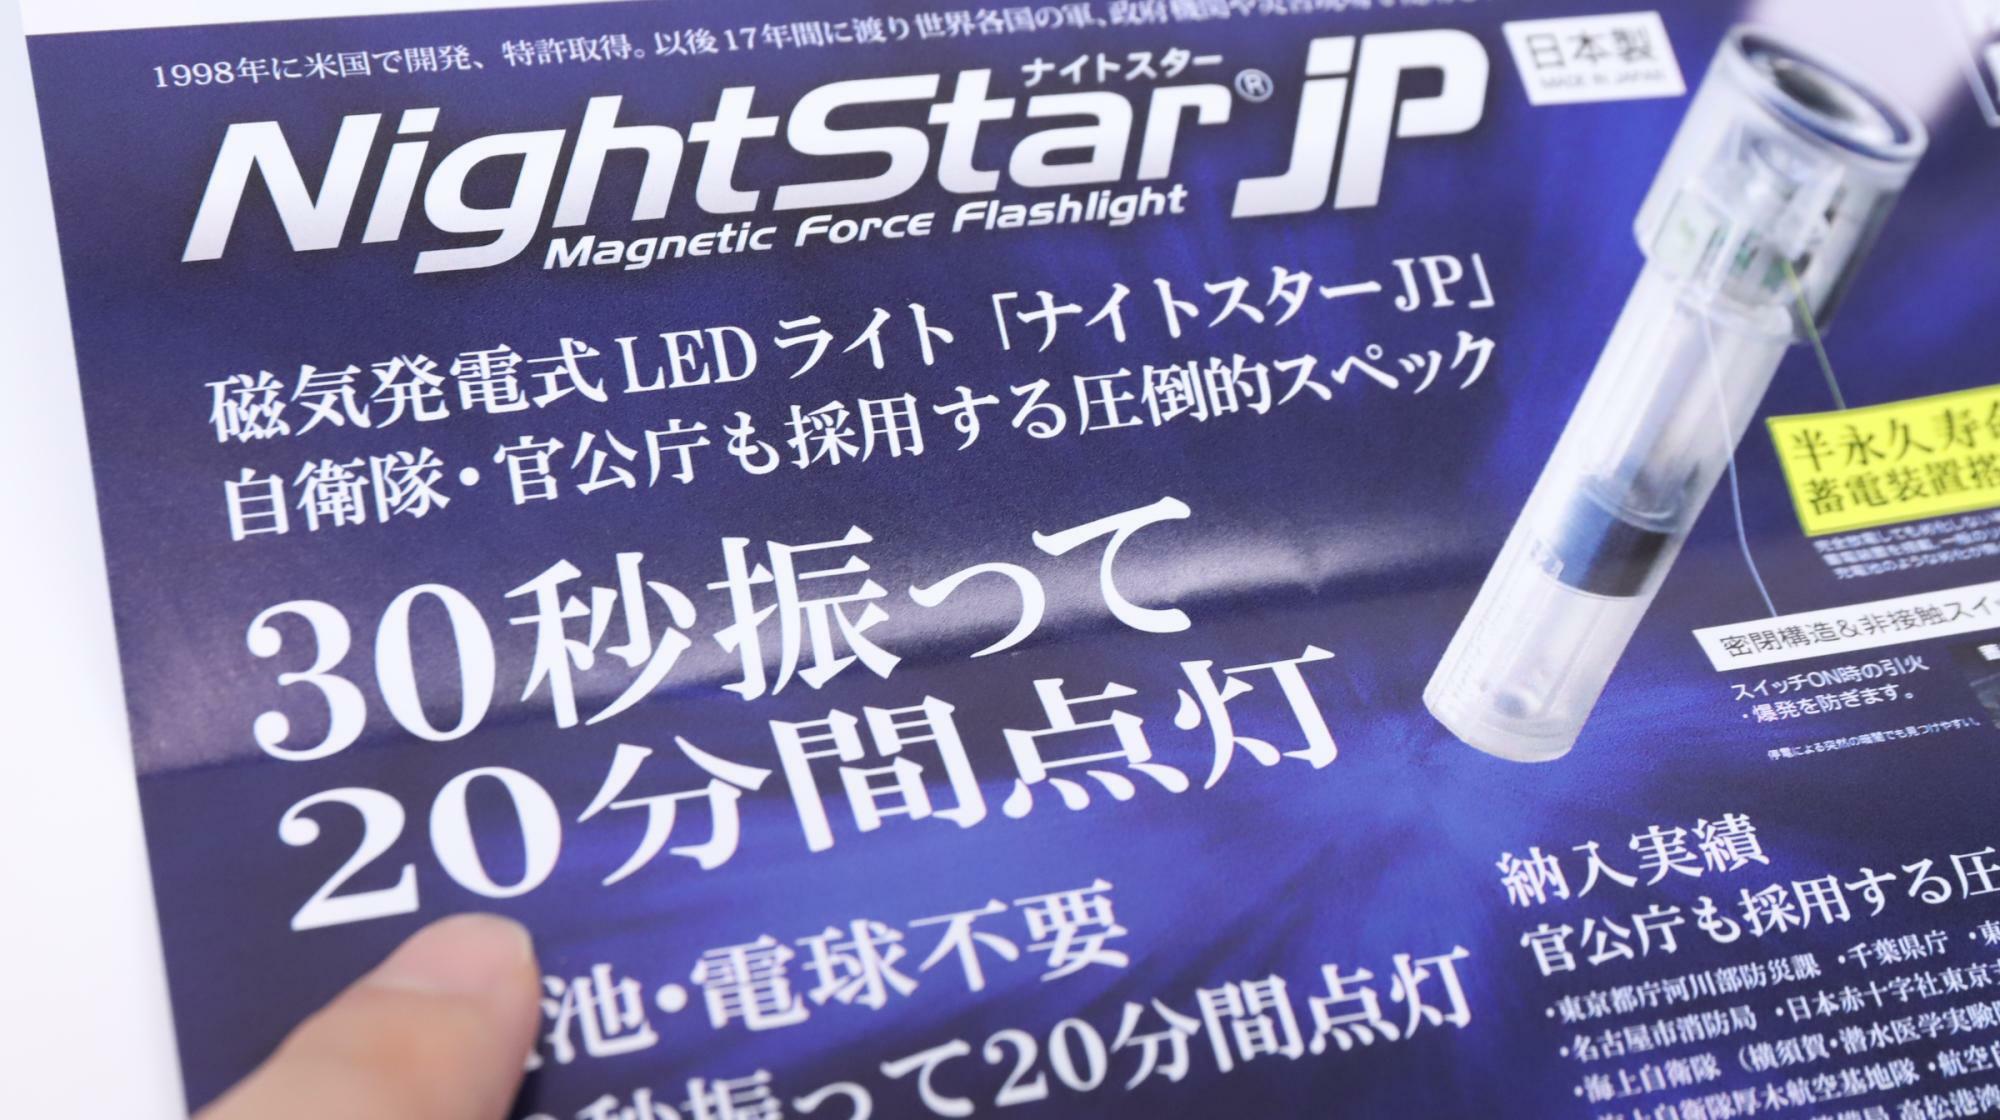 電池不要の防災ライト「ナイトスターJP」購入時に入っていたパンフレット